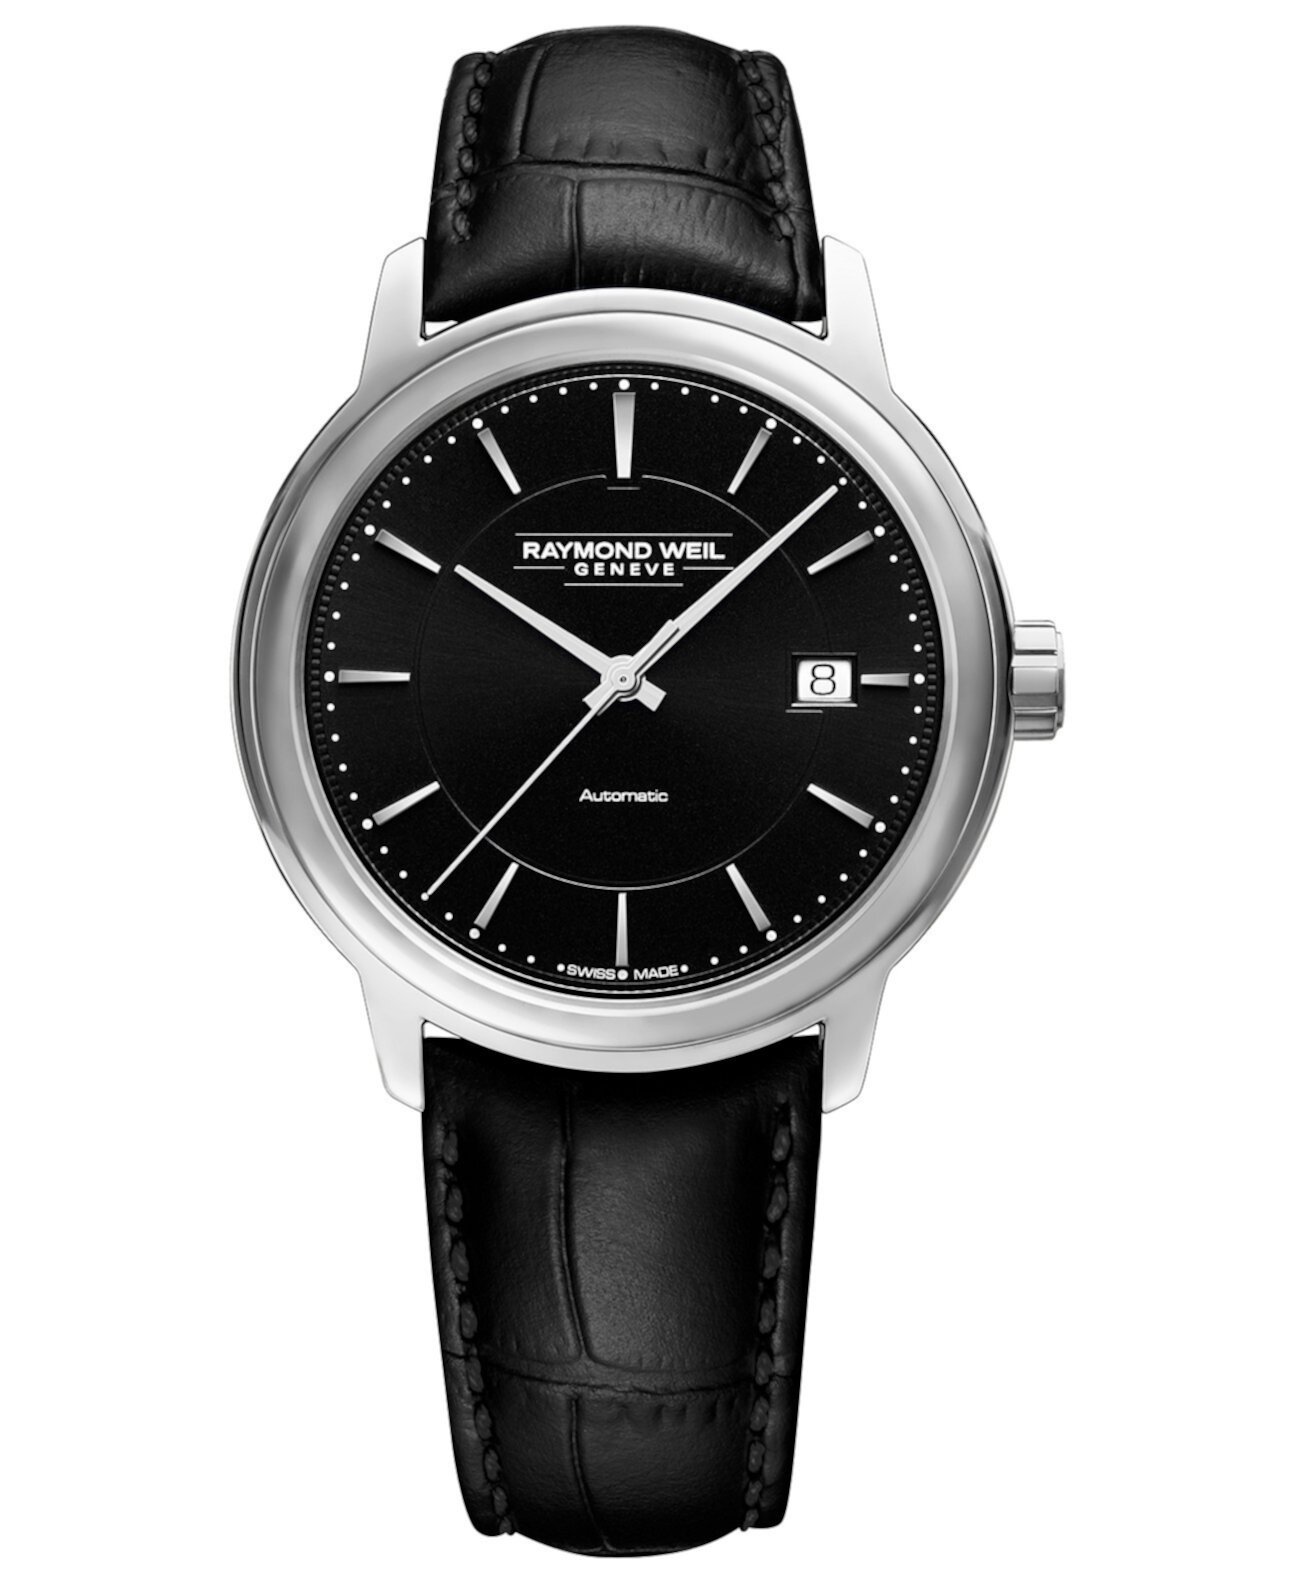 Мужские швейцарские автоматические часы Maestro с черным кожаным ремешком 40 мм Raymond Weil